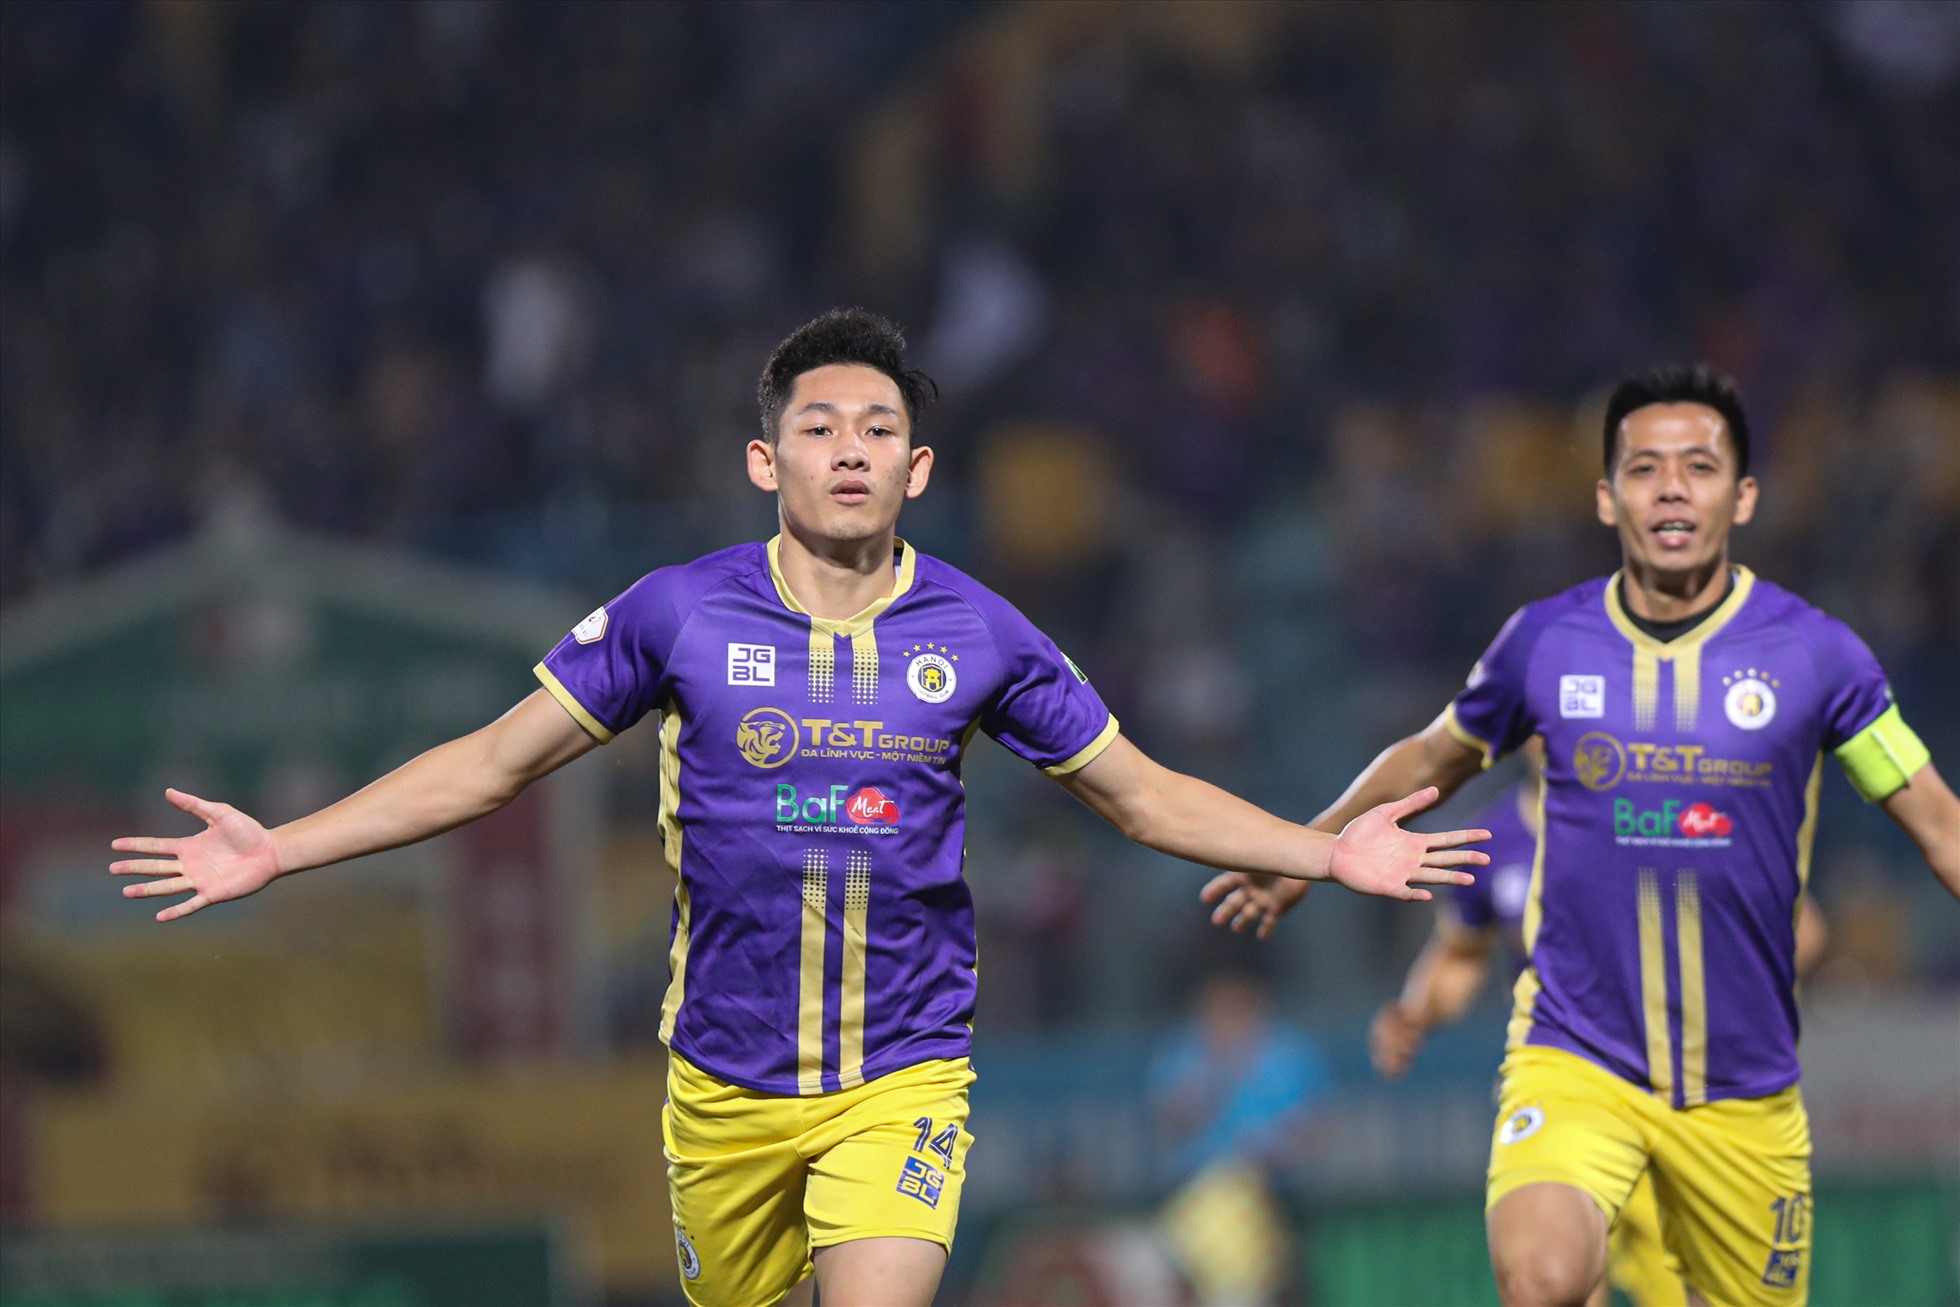 Ngay phút thứ 4 trận đấu, tiền vệ Nguyễn Hai Long mở tỉ số sau đường chuyền như dọn cỗ của Đỗ Hùng Dũng.